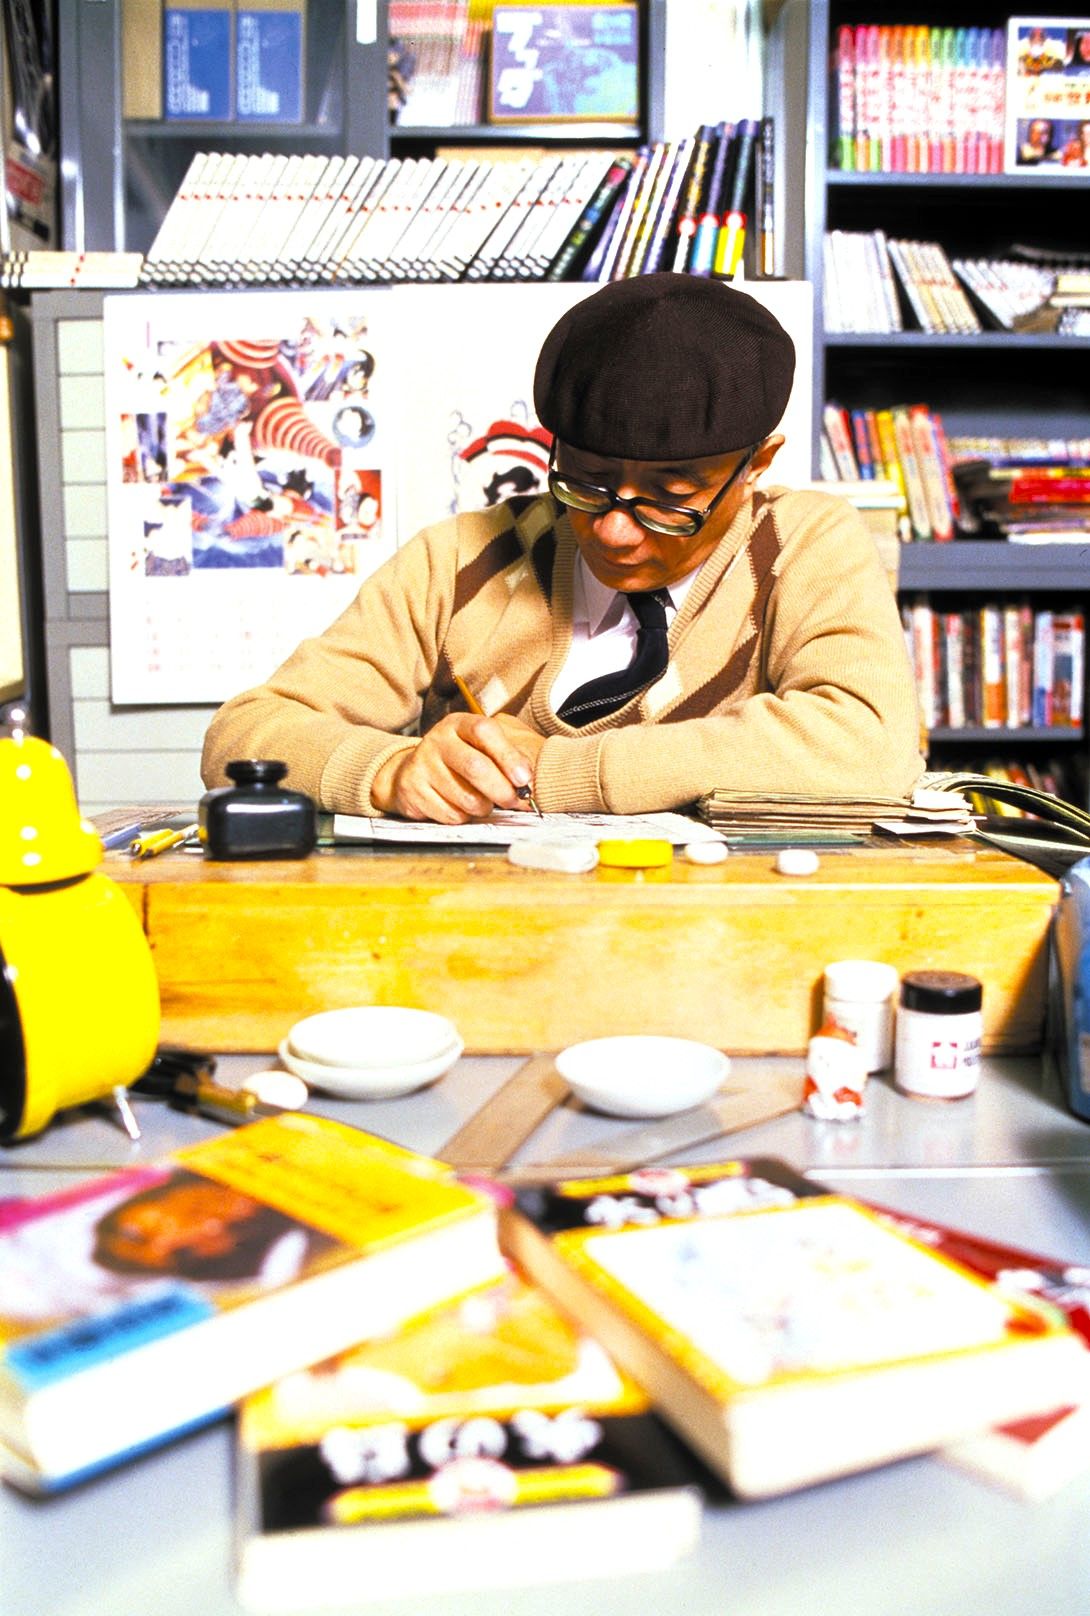 ولد تيزوكا أوسامو في محافظة أوساكا في عام 1928، ونشرت أعماله الاحترافية في عالم المانغا لأول مرة في عام 1946 واستمر في إنتاج الأعمال بمعدل مذهل حتى وفاته عن عمر ناهز 60 عاما في عام 1989 (© تيزوكا برودكشنز).